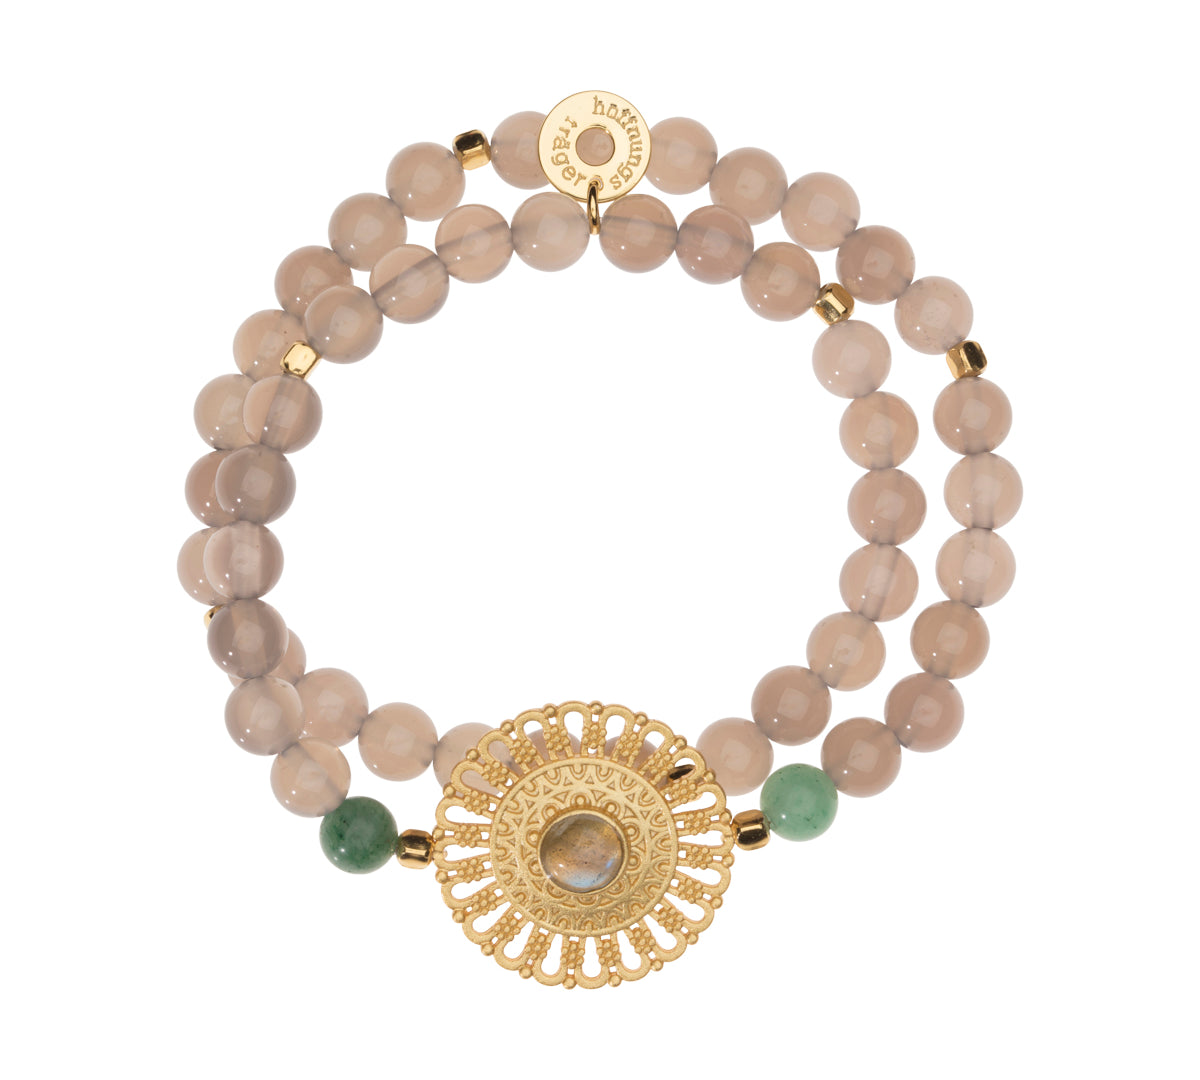 Doppelreihiges Edelstein Armband mit goldenem Mandala, Achat Perlen und Labradorit Heilstein.